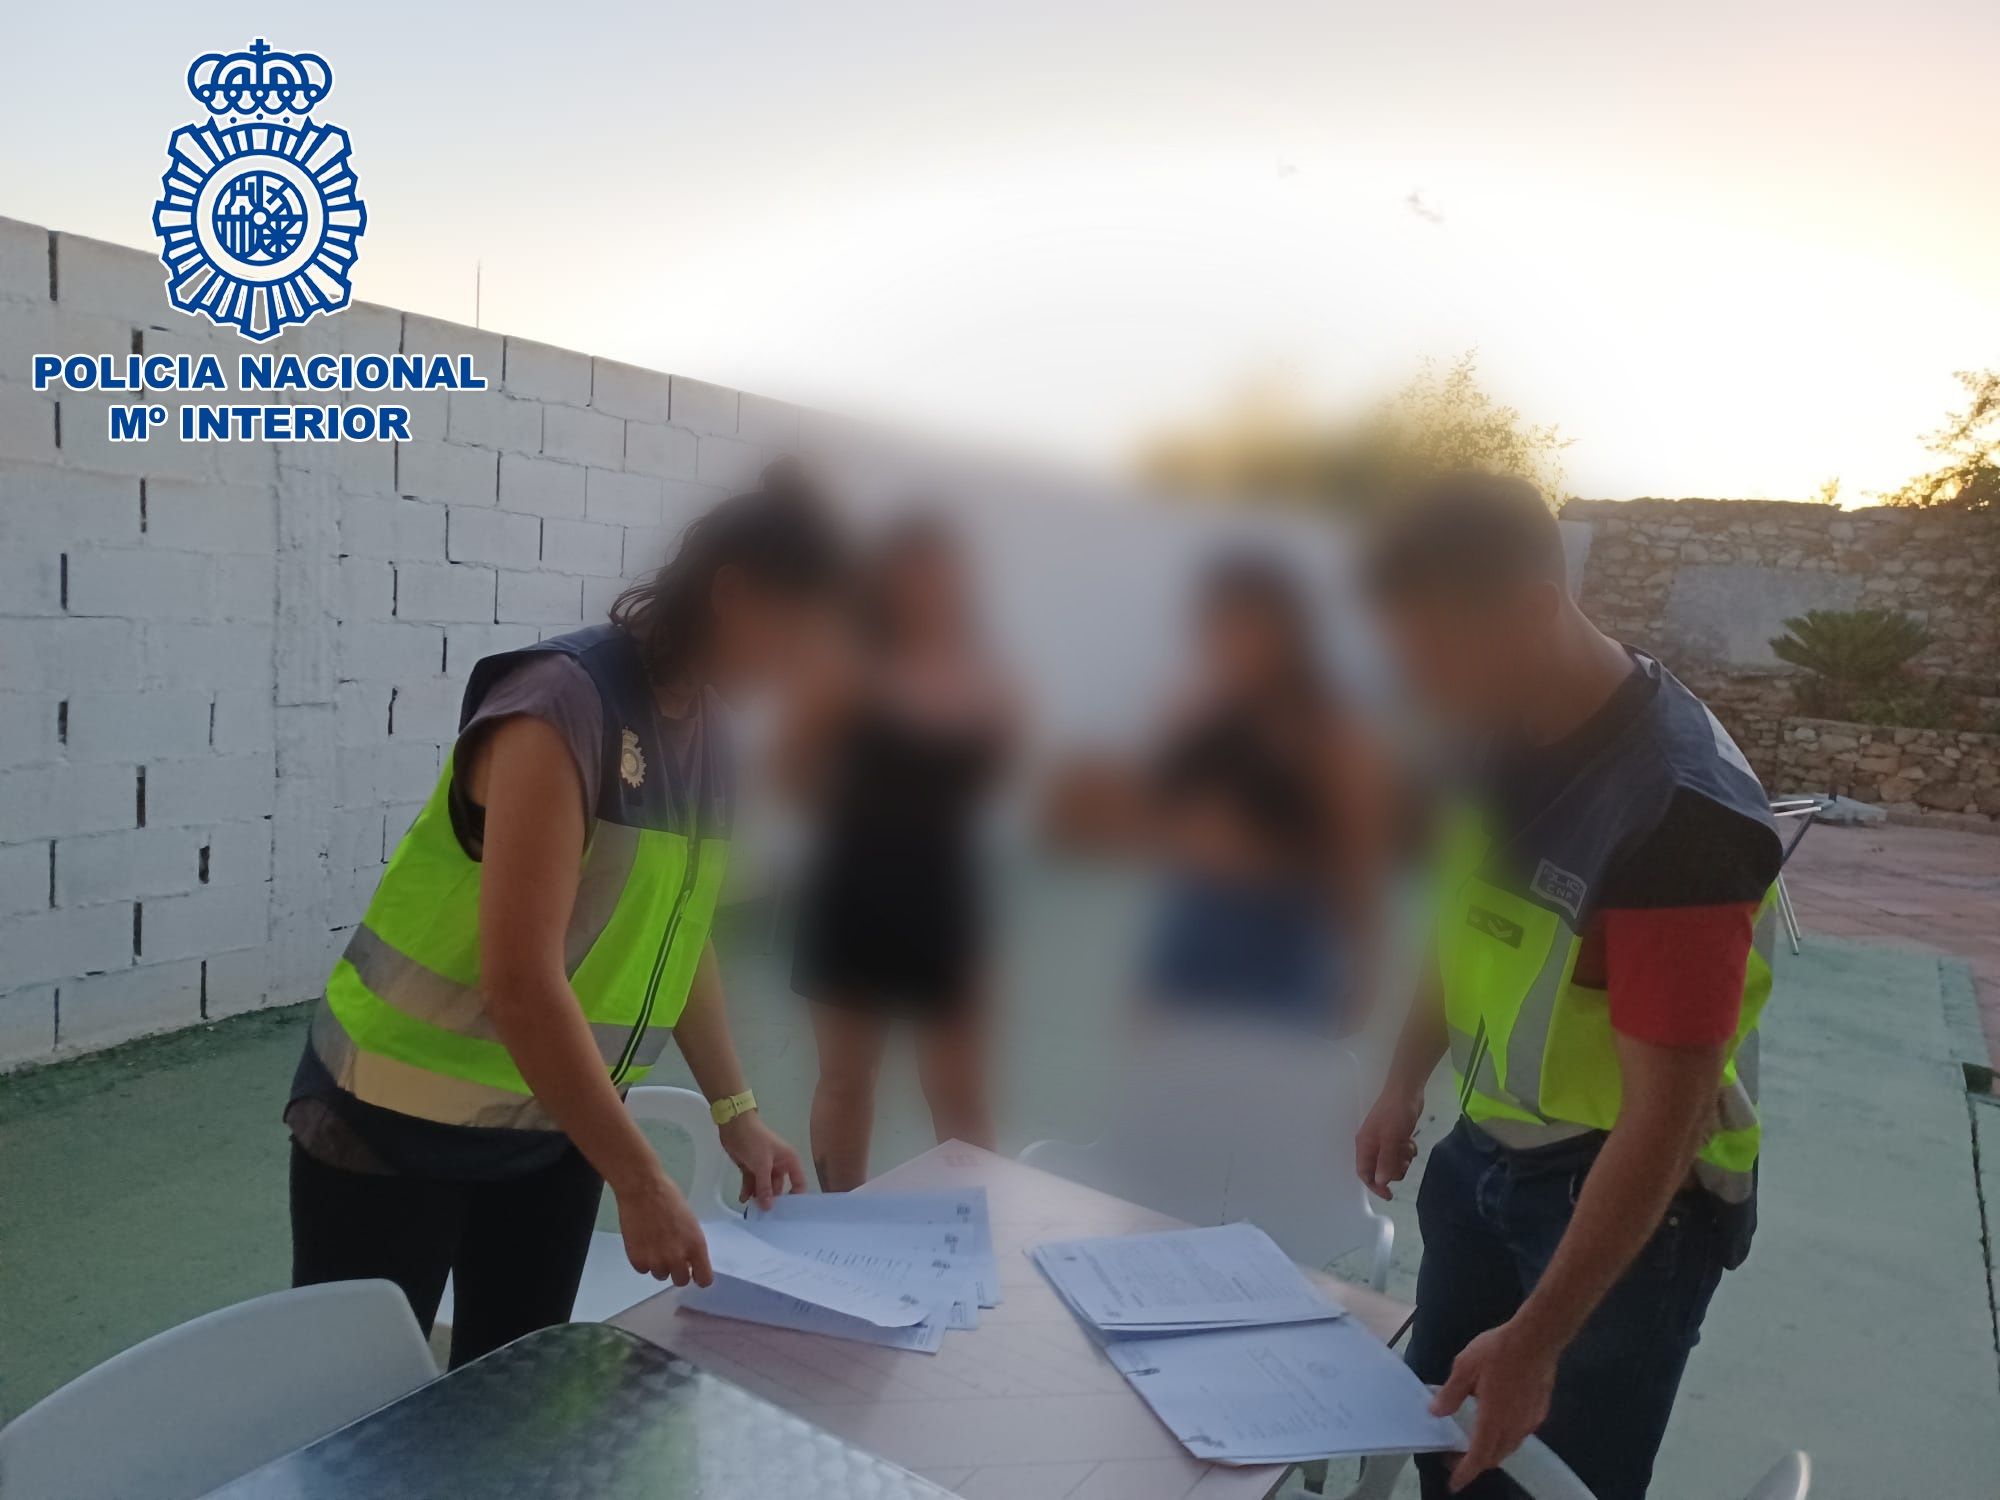 La dueña de un negocio de alimentación de La Línea empadrona a 19 migrantes ilegales. Agentes de Policía en La Línea, en la imagen.